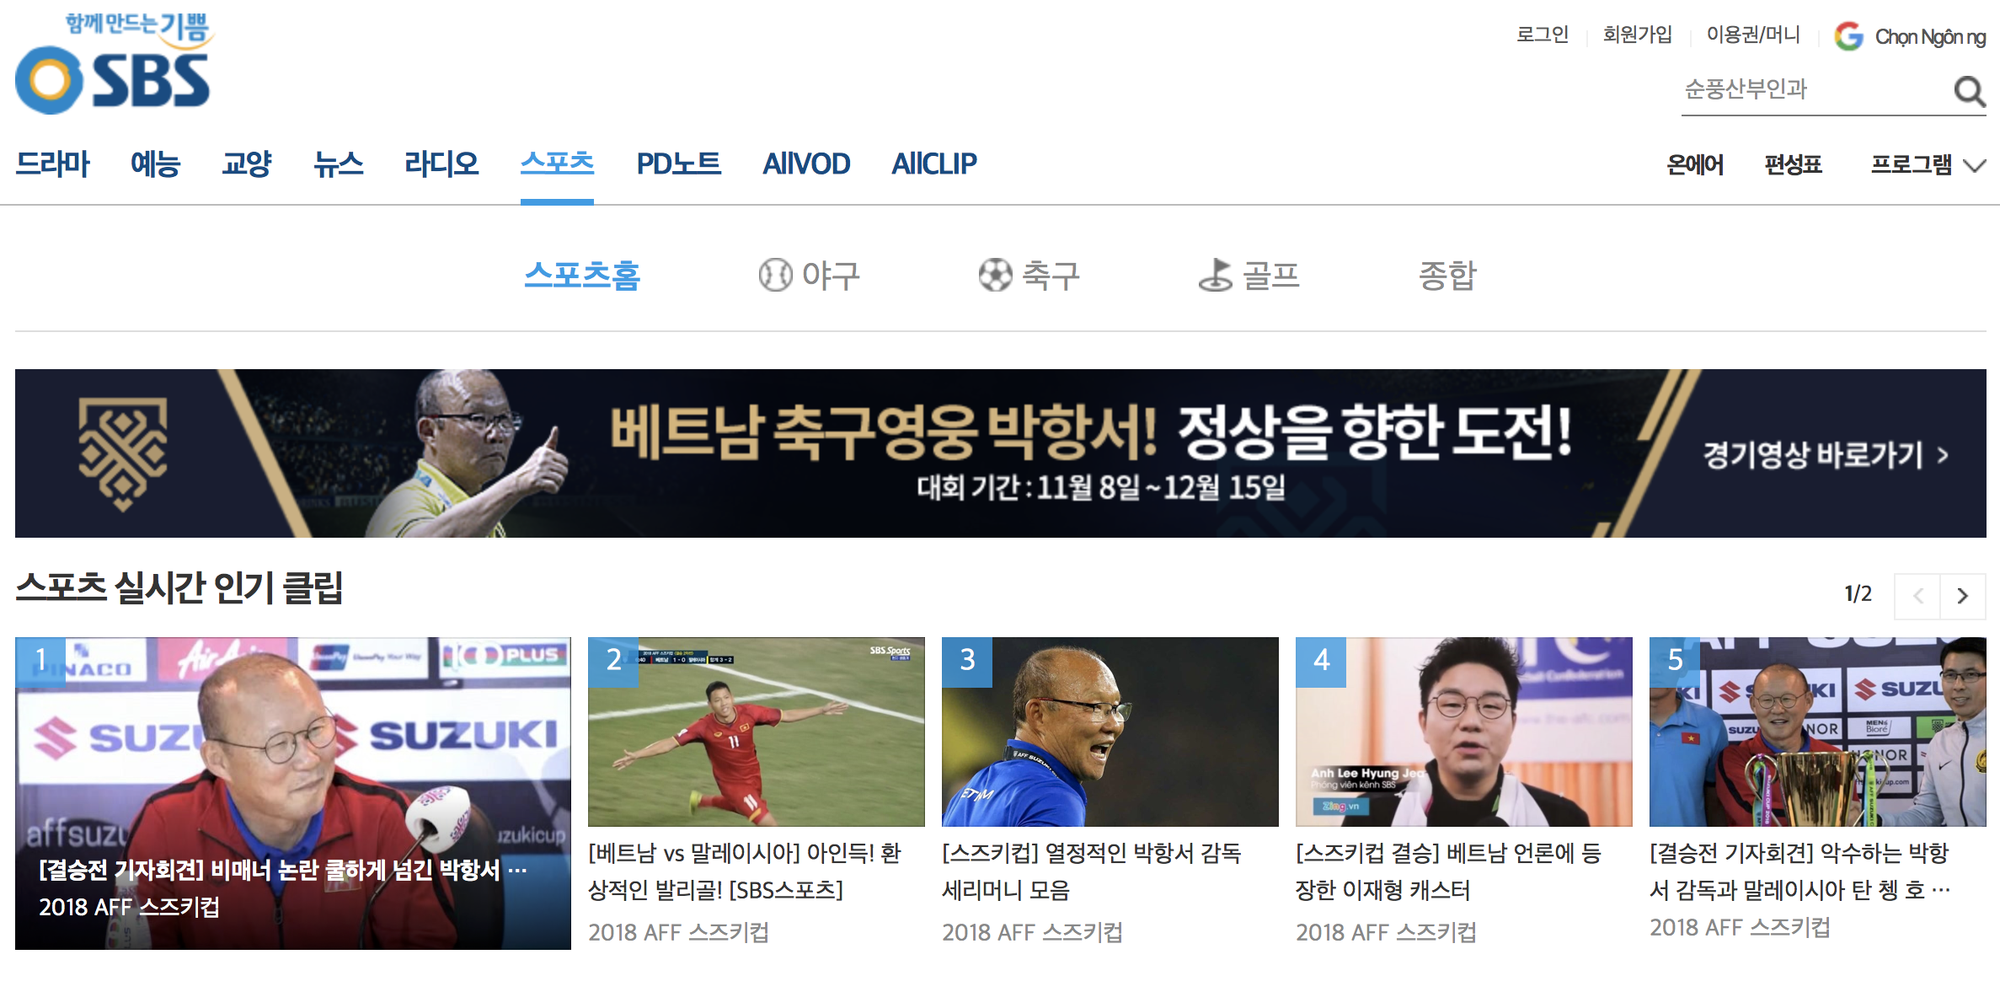 Truyền thông Hàn Quốc: Ông Park làm nên lịch sử kỳ diệu cùng bóng đá Việt Nam - Ảnh 3.